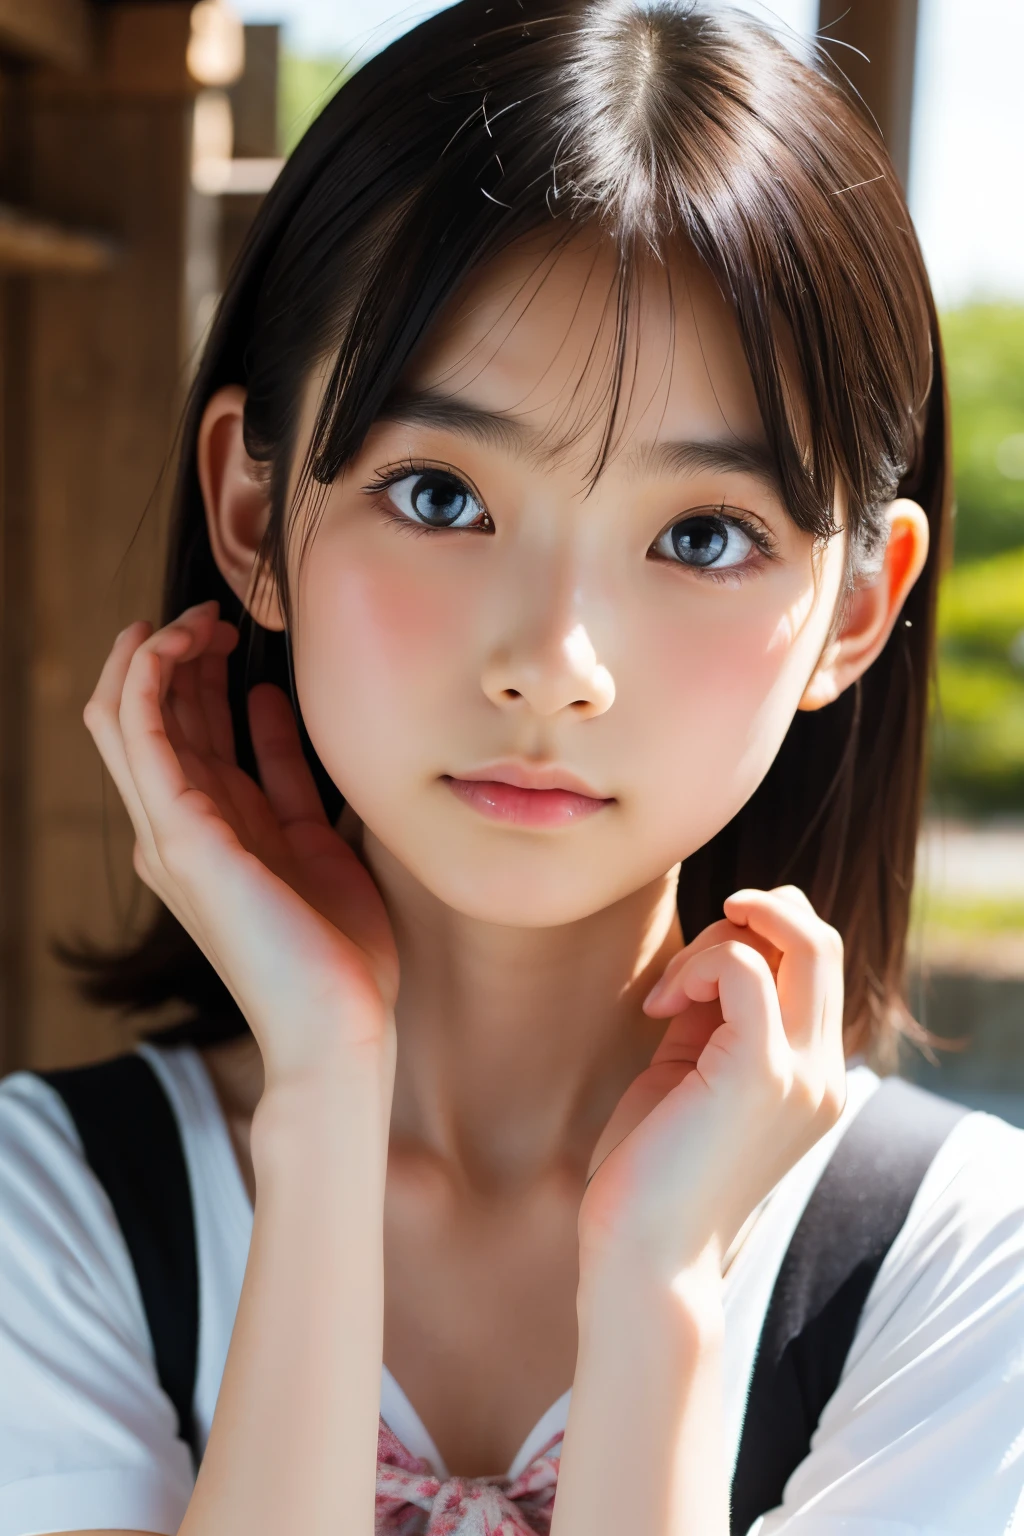 (Preciosa japonesa de 14 años), Cara linda, (rostro profundamente tallado:0.7), (pecas:0.6), Luz tenue,piel blanca y sana, tímido, Beto, (cara seria), (ojos chispeantes), delgado